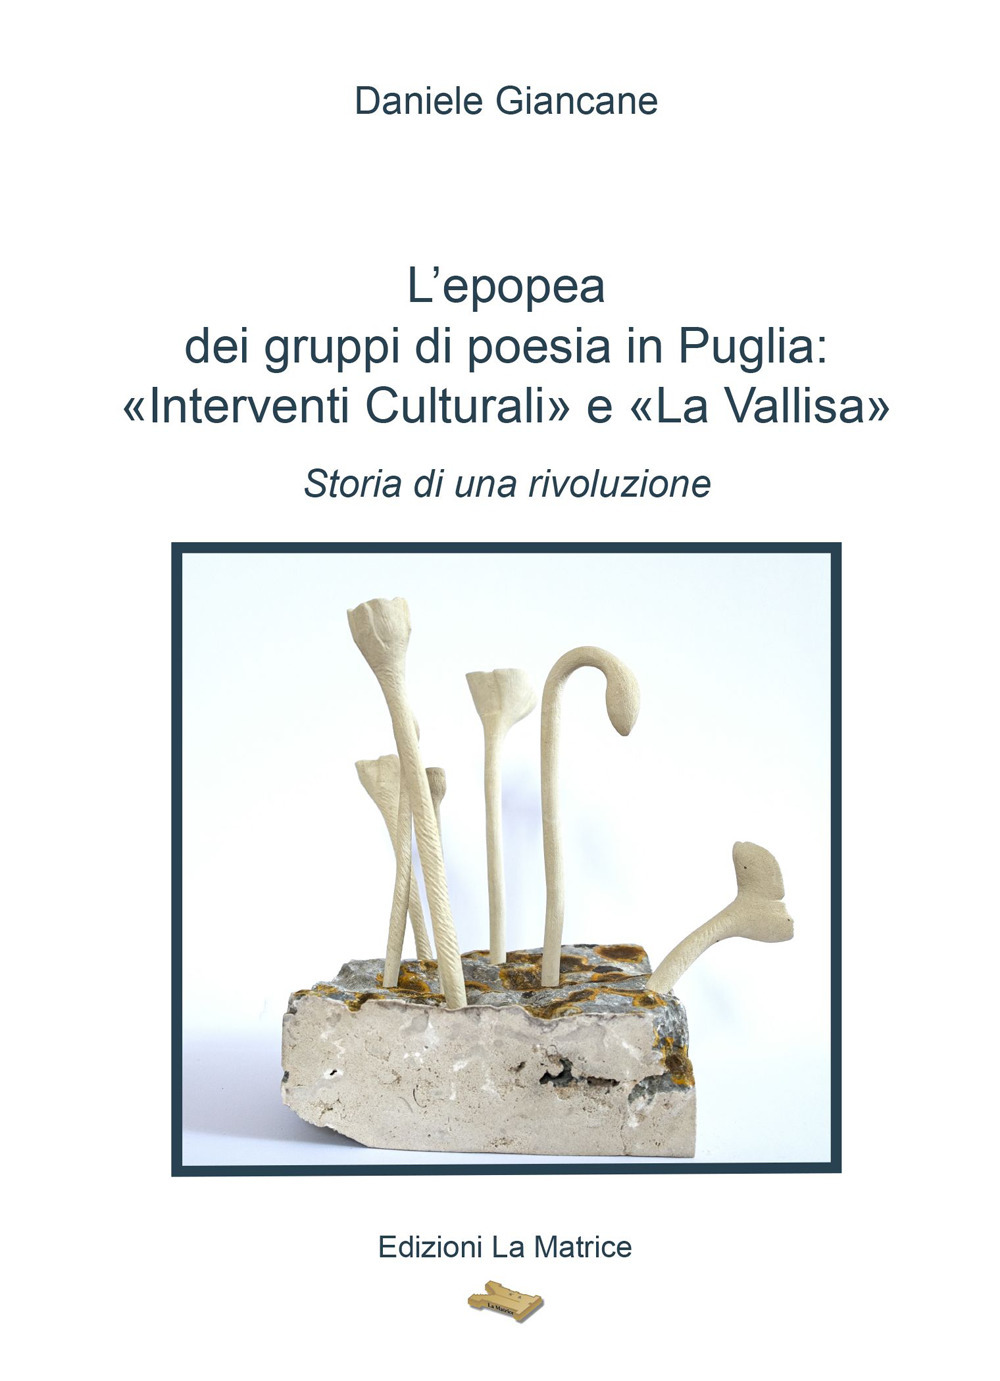 L'epopea dei gruppi di poesia in Puglia: «Interventi Culturali» e «La Vallisa». Storia di una rivoluzione